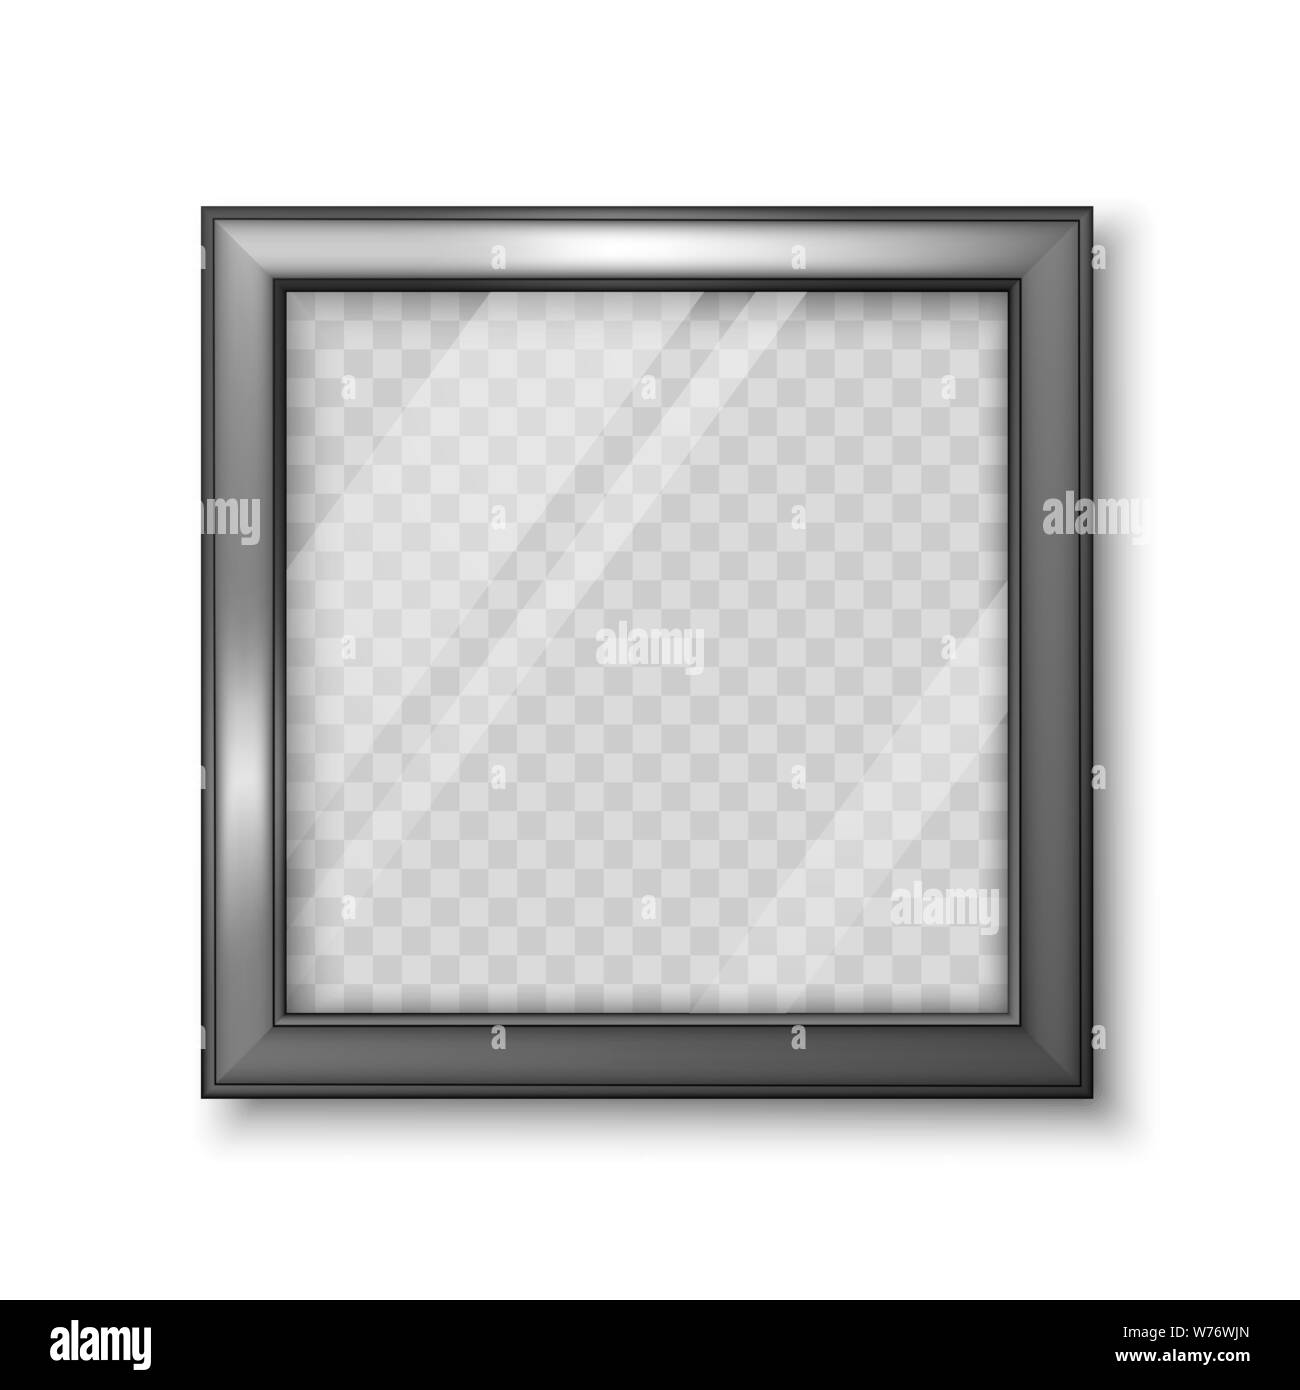 Place réaliste cadre noir avec fond transparent pour photo ou photo. Vector illustration isolé sur fond blanc Illustration de Vecteur